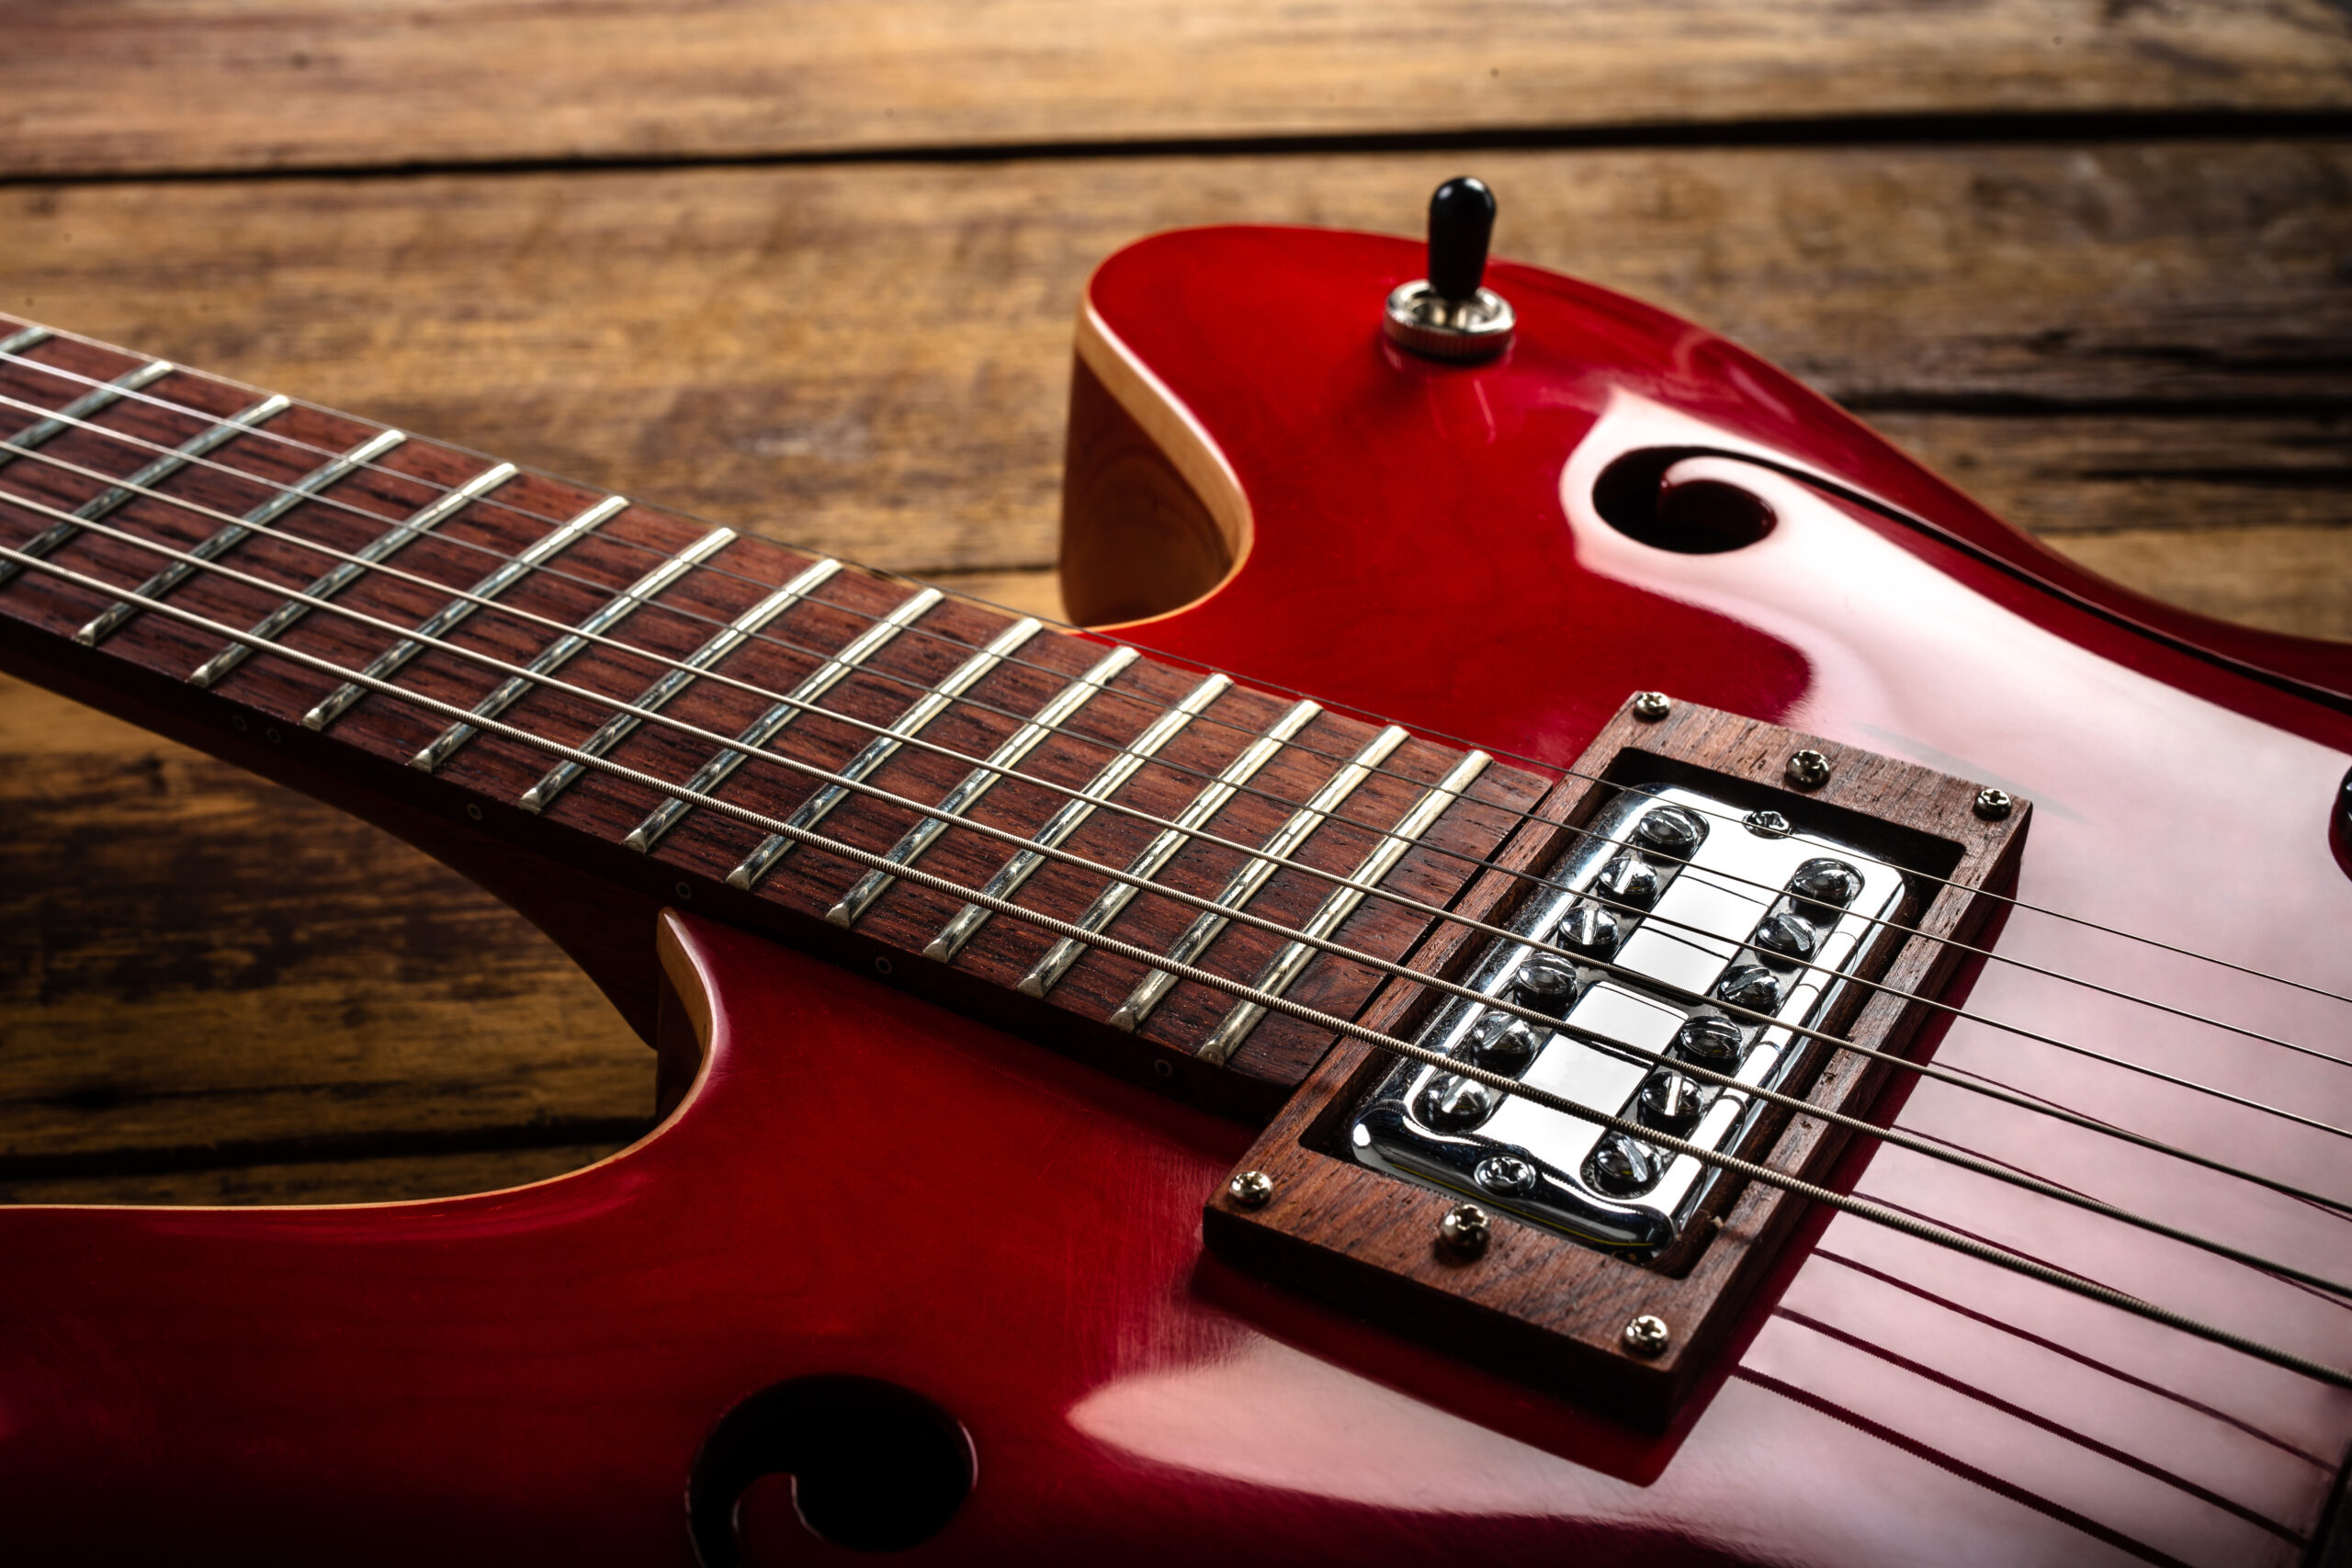 guitarra electrica roja sobre suelo madera scaled - KronalinE - K+E Output